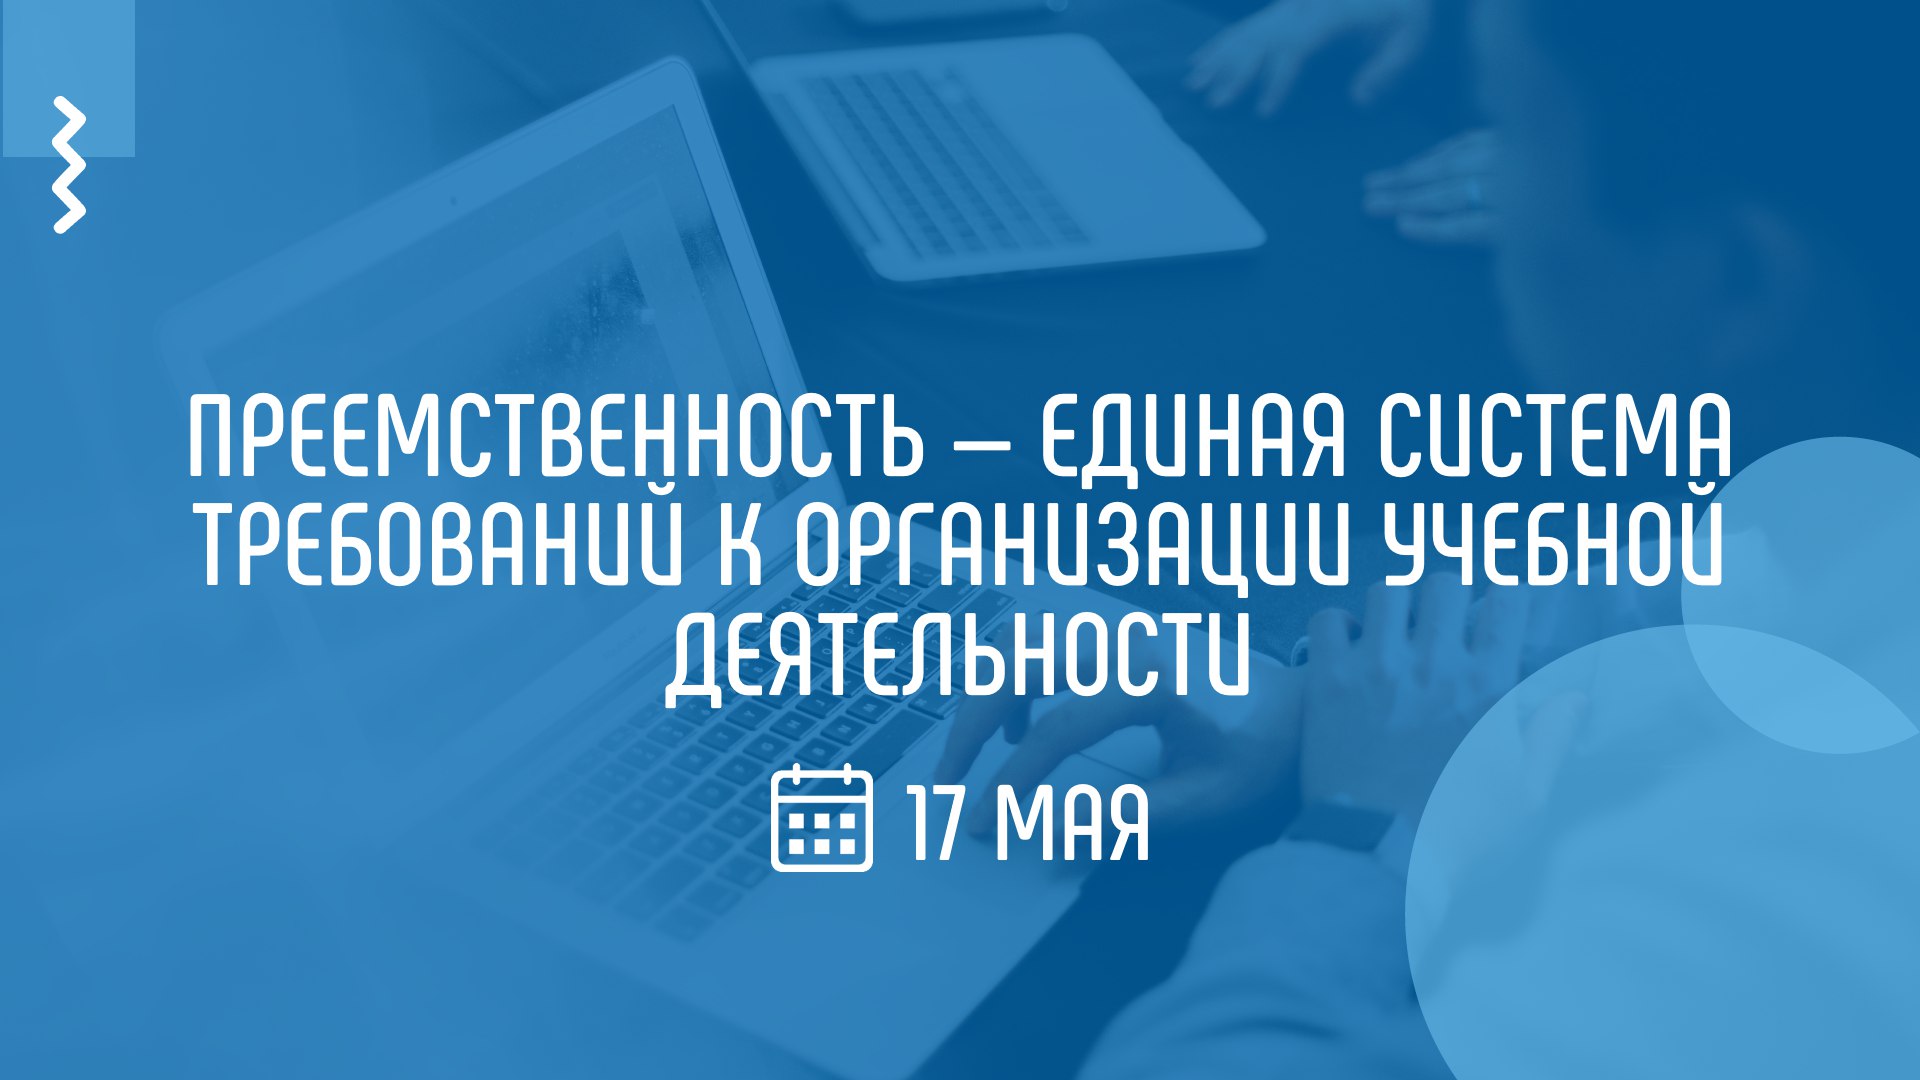 На вебинаре Академии Минпросвещения России обсудят вопросы преемственности в учебной деятельности